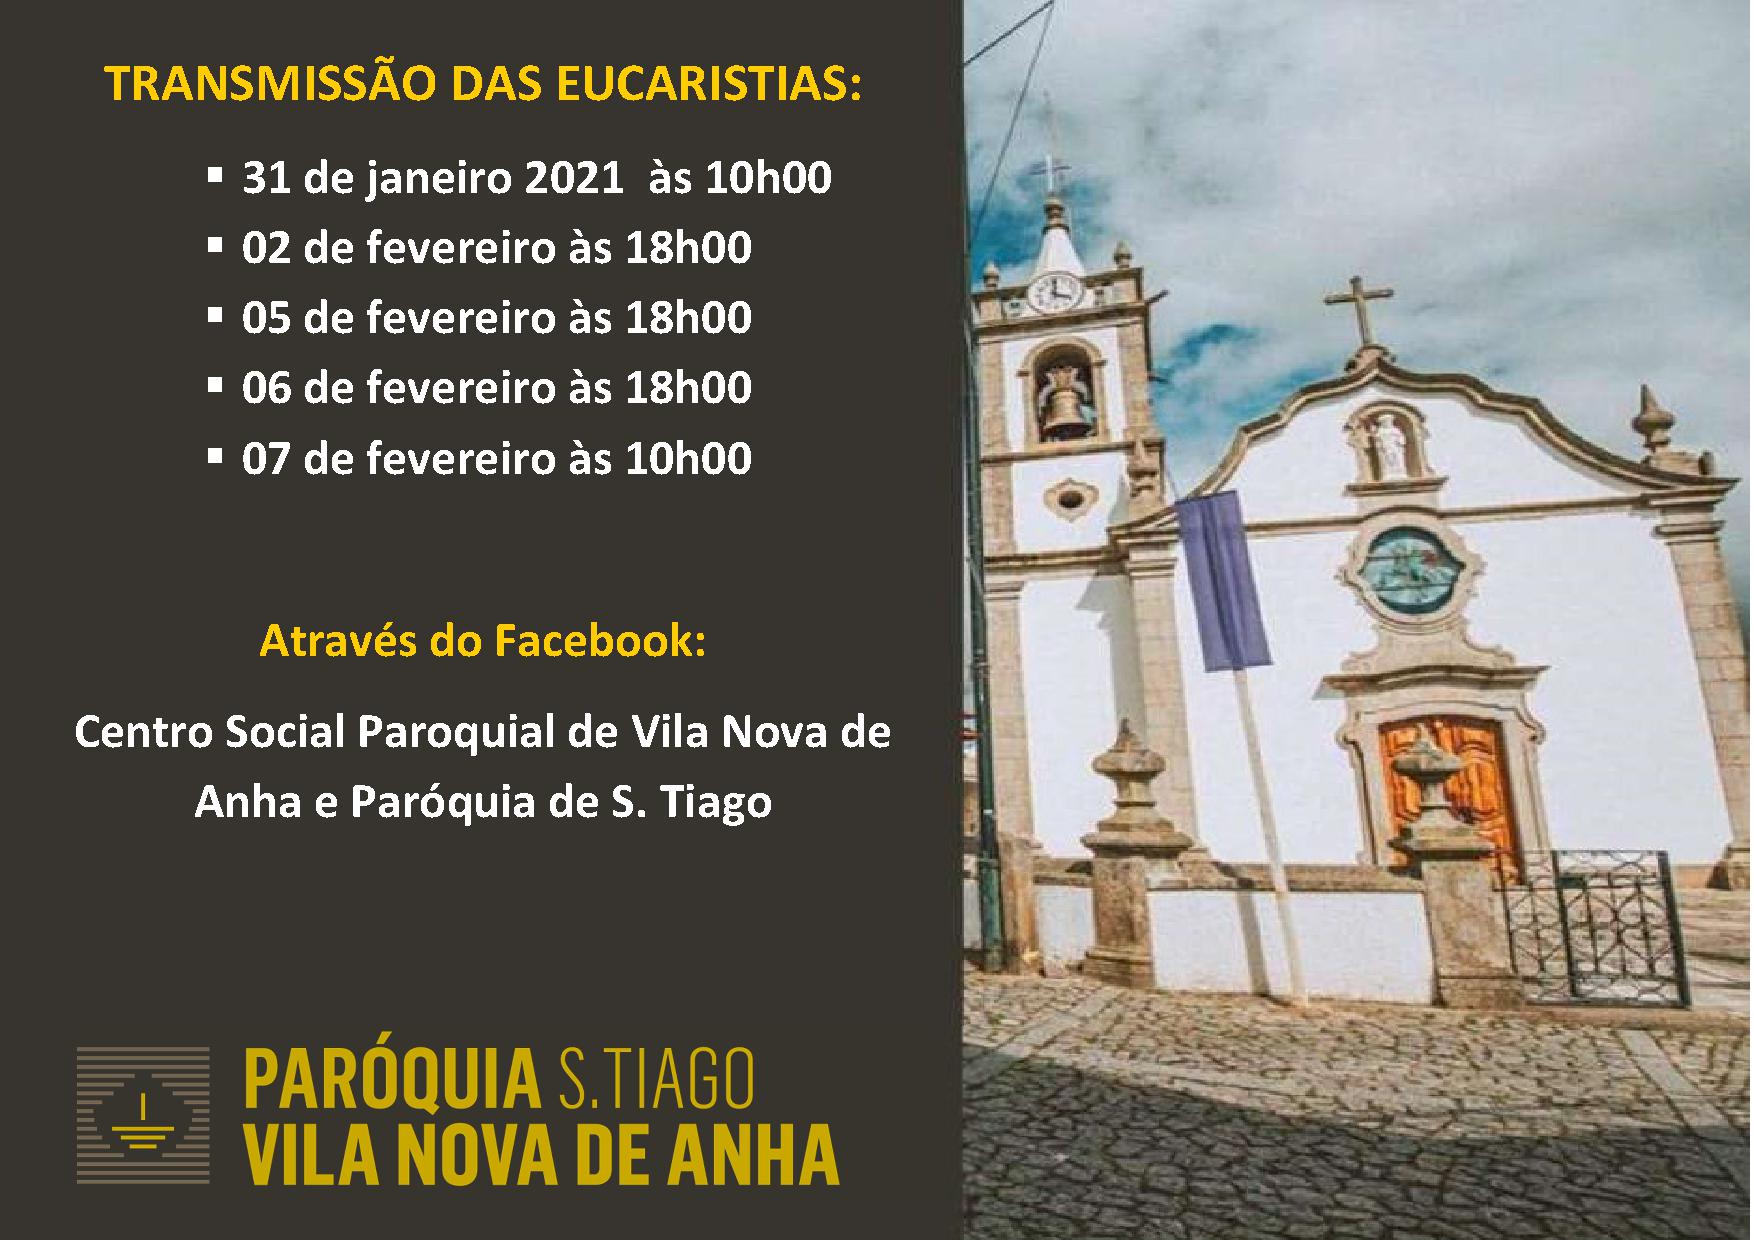 TRANSMISSÃO DAS EUCARISTIAS - Facebook: Centro Social Paroquial de Vila Nova de Anha e Paróquia de S. Tiago